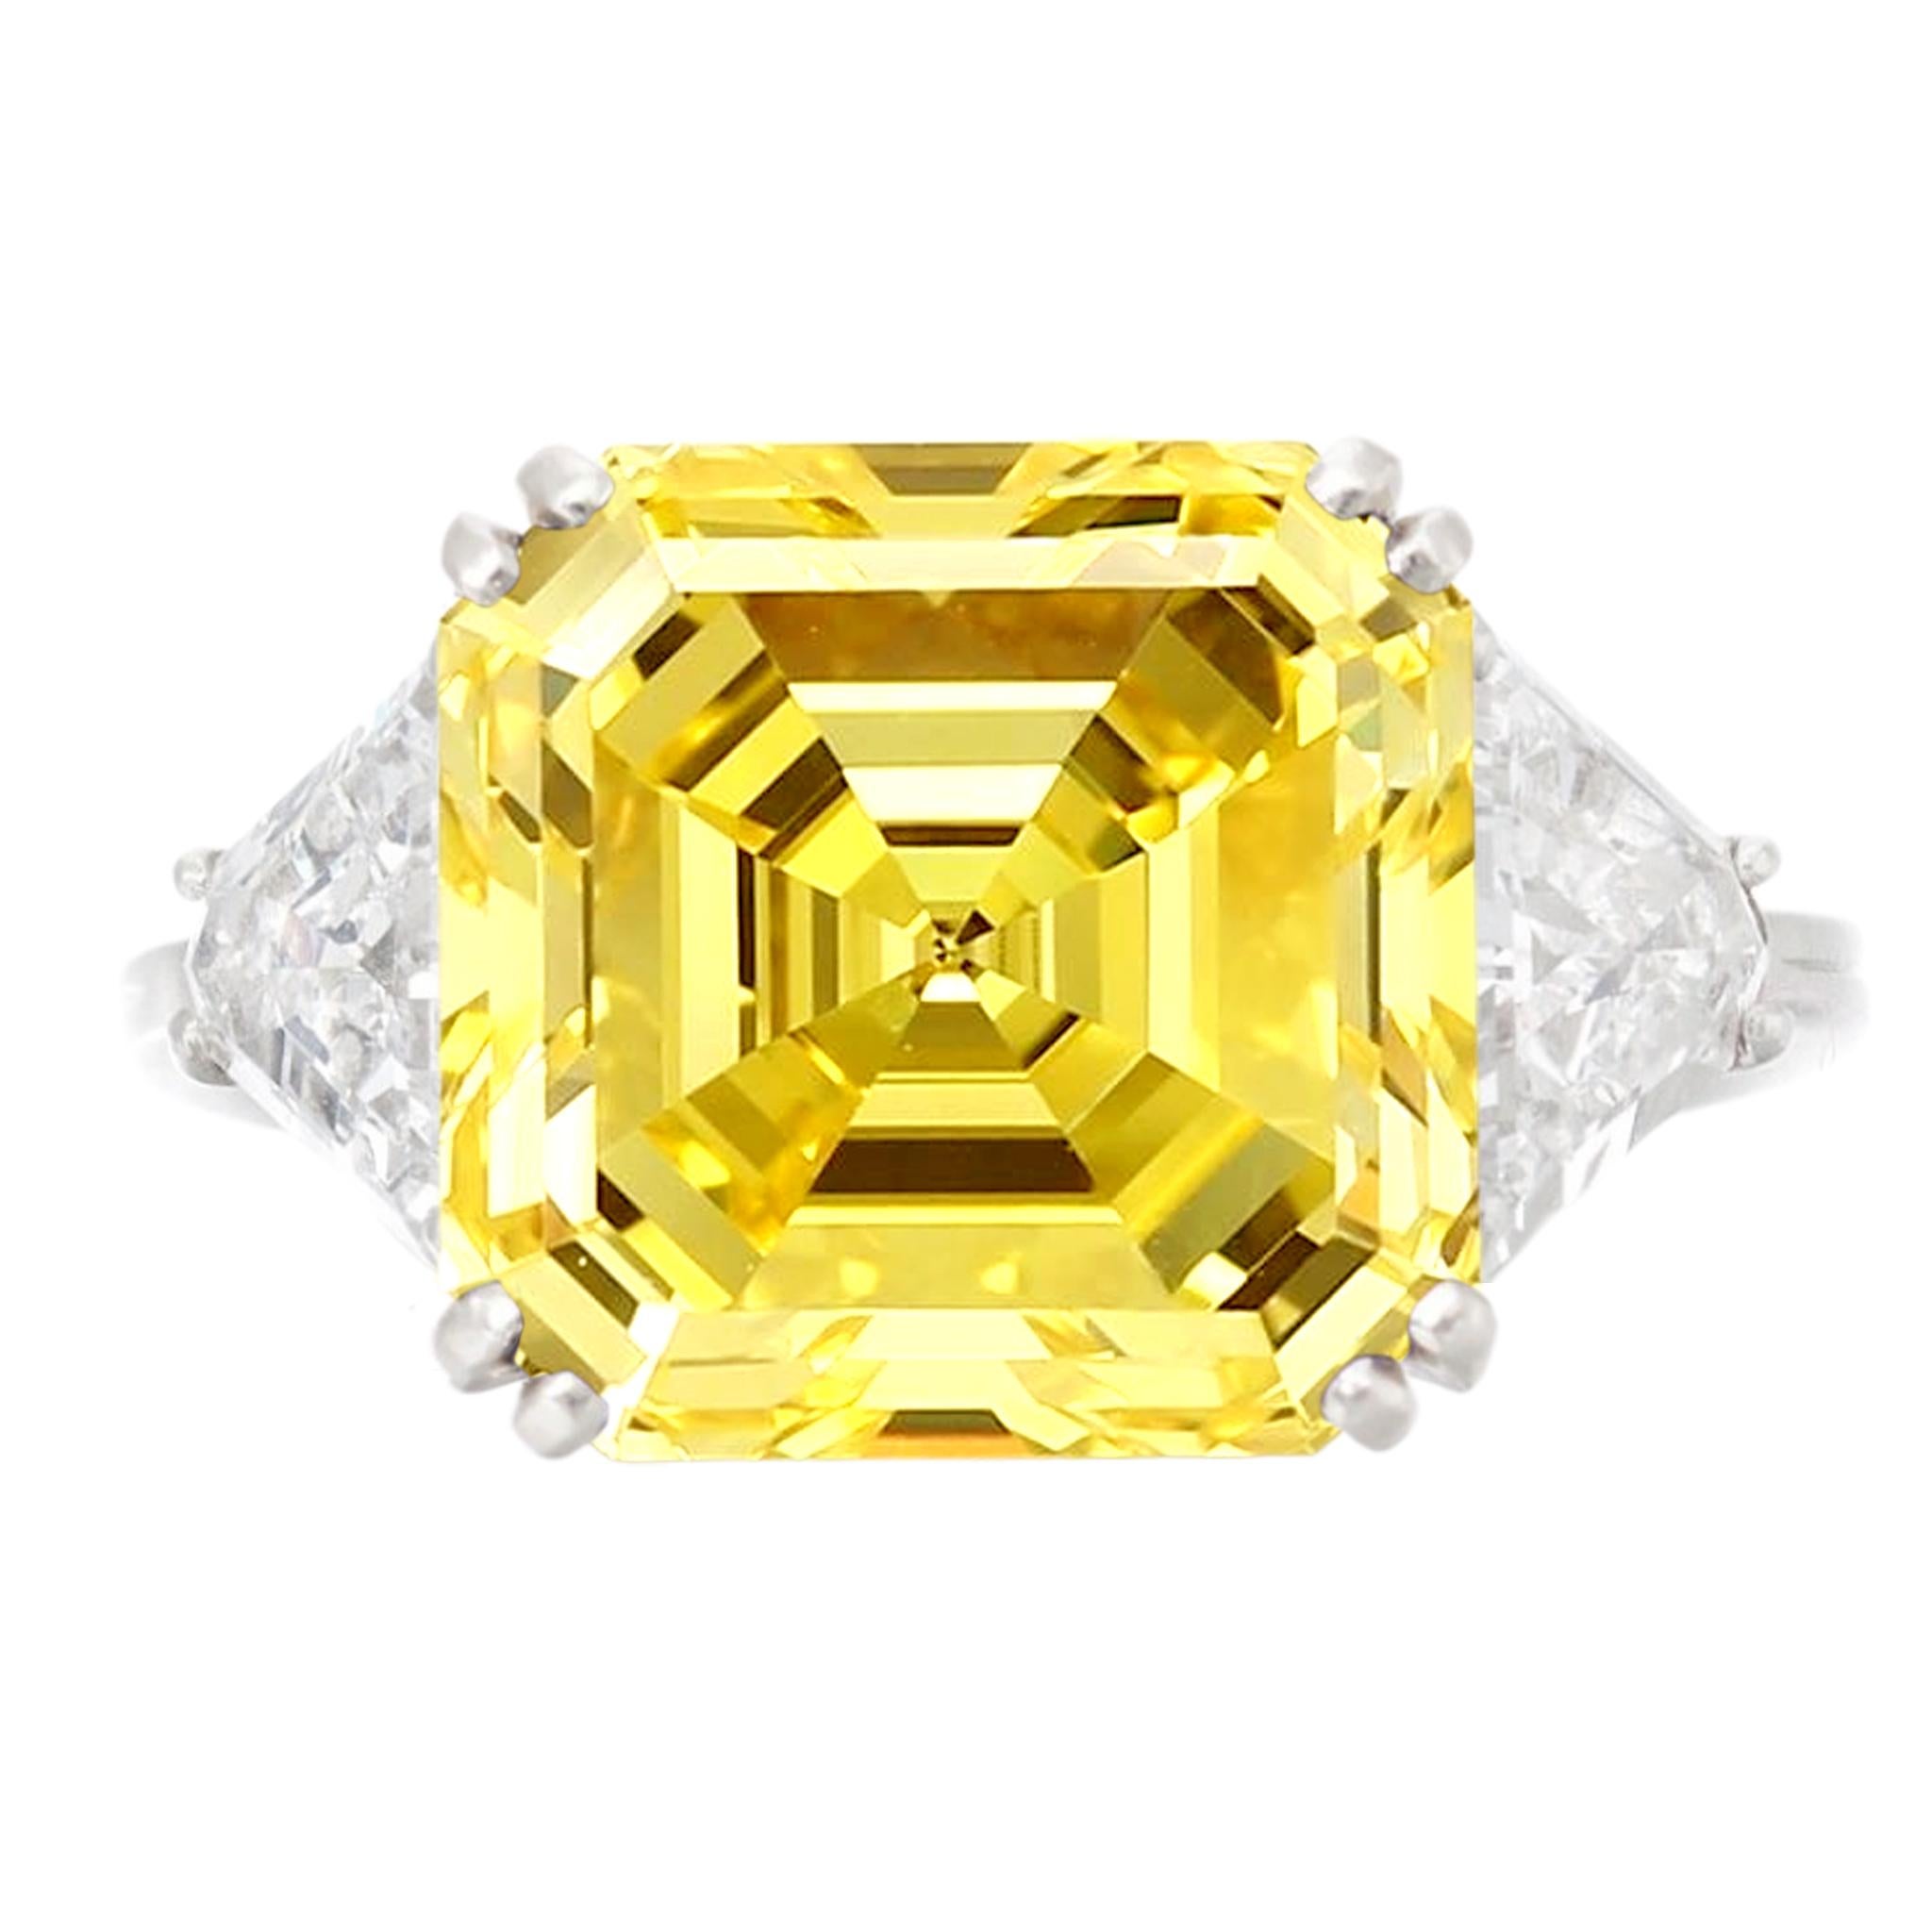 GIA Certified 3 carat emerald Cut Fancy VIVID Yellow est accompagné d'un certificat GIA. Cette magnifique taille Asscher brillante est sertie dans une monture en or jaune 18 carats faite à la main.

Vous avez ce diamant mais souhaitez le faire